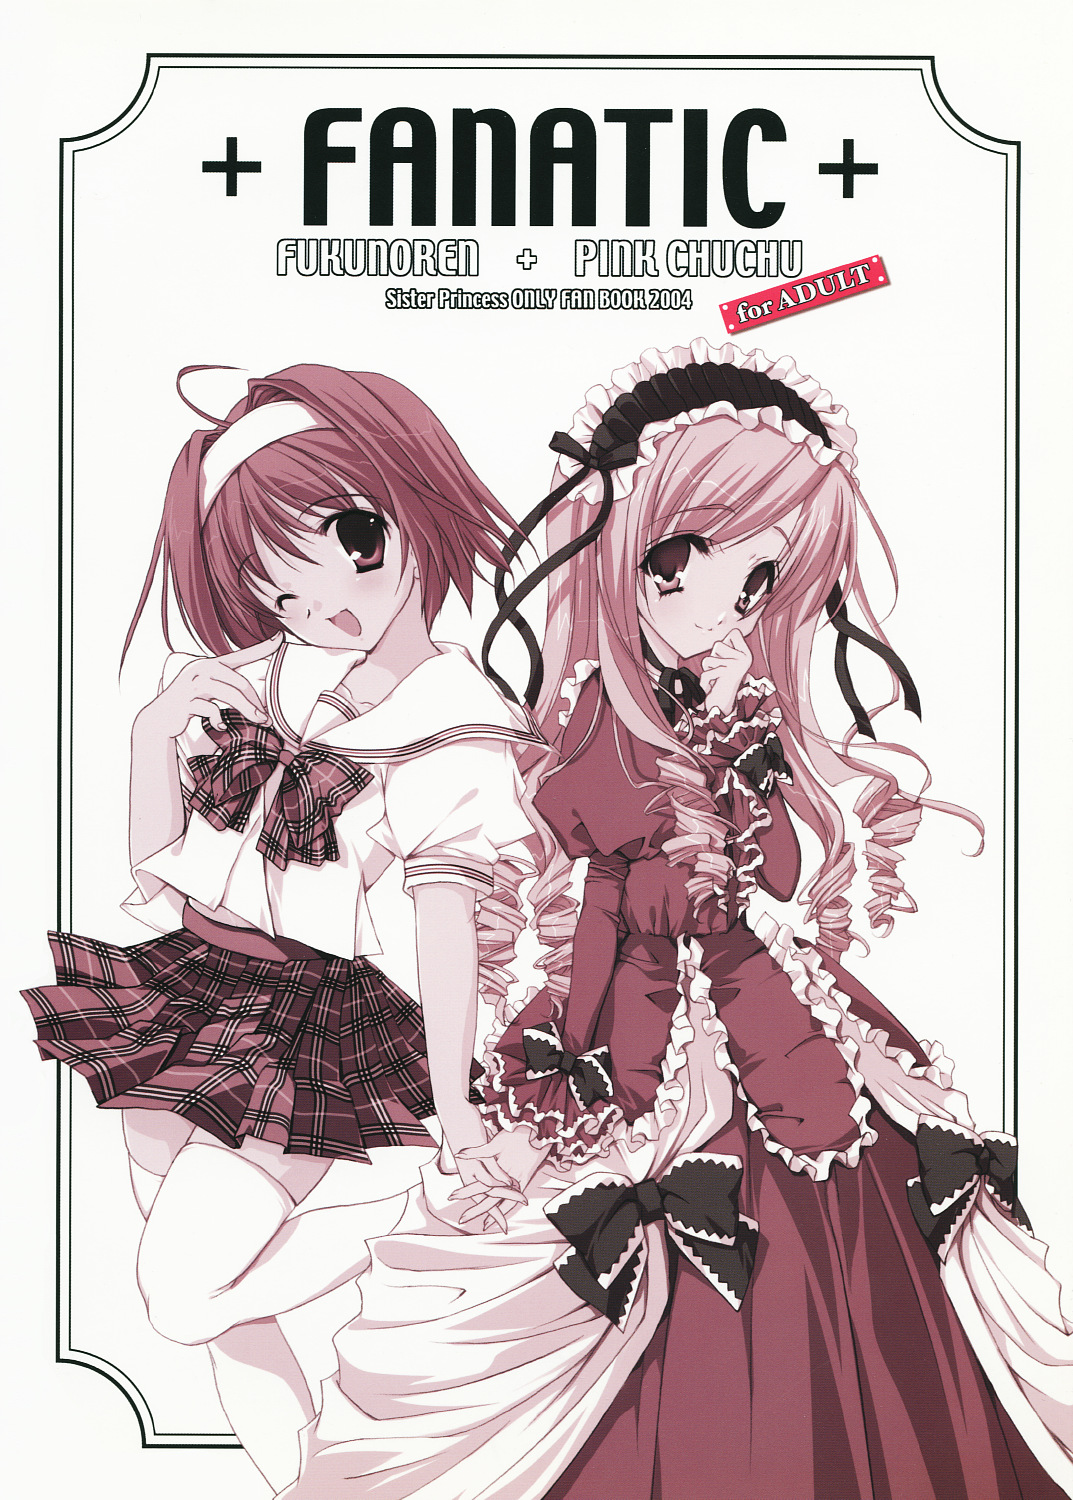 (C66) [Fukunoren, PINK CHUCHU (Yukiwo, Mikeou)] +FANATIC+ (Sister Princess) page 18 full